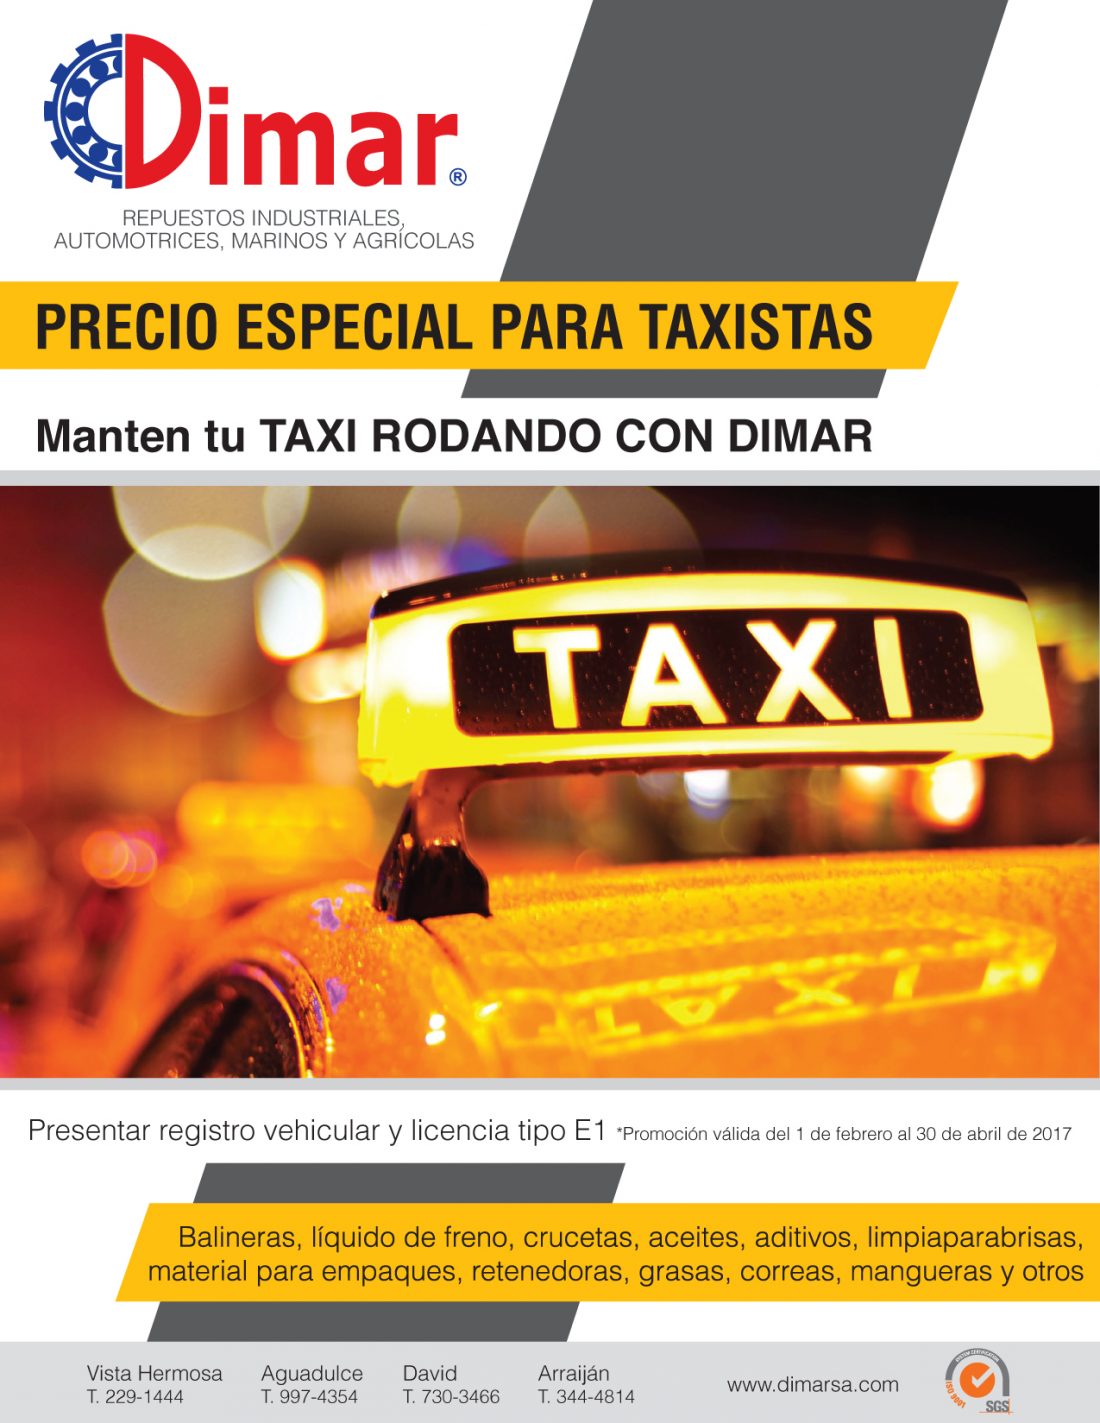 (Español) Precio especial para Taxistas